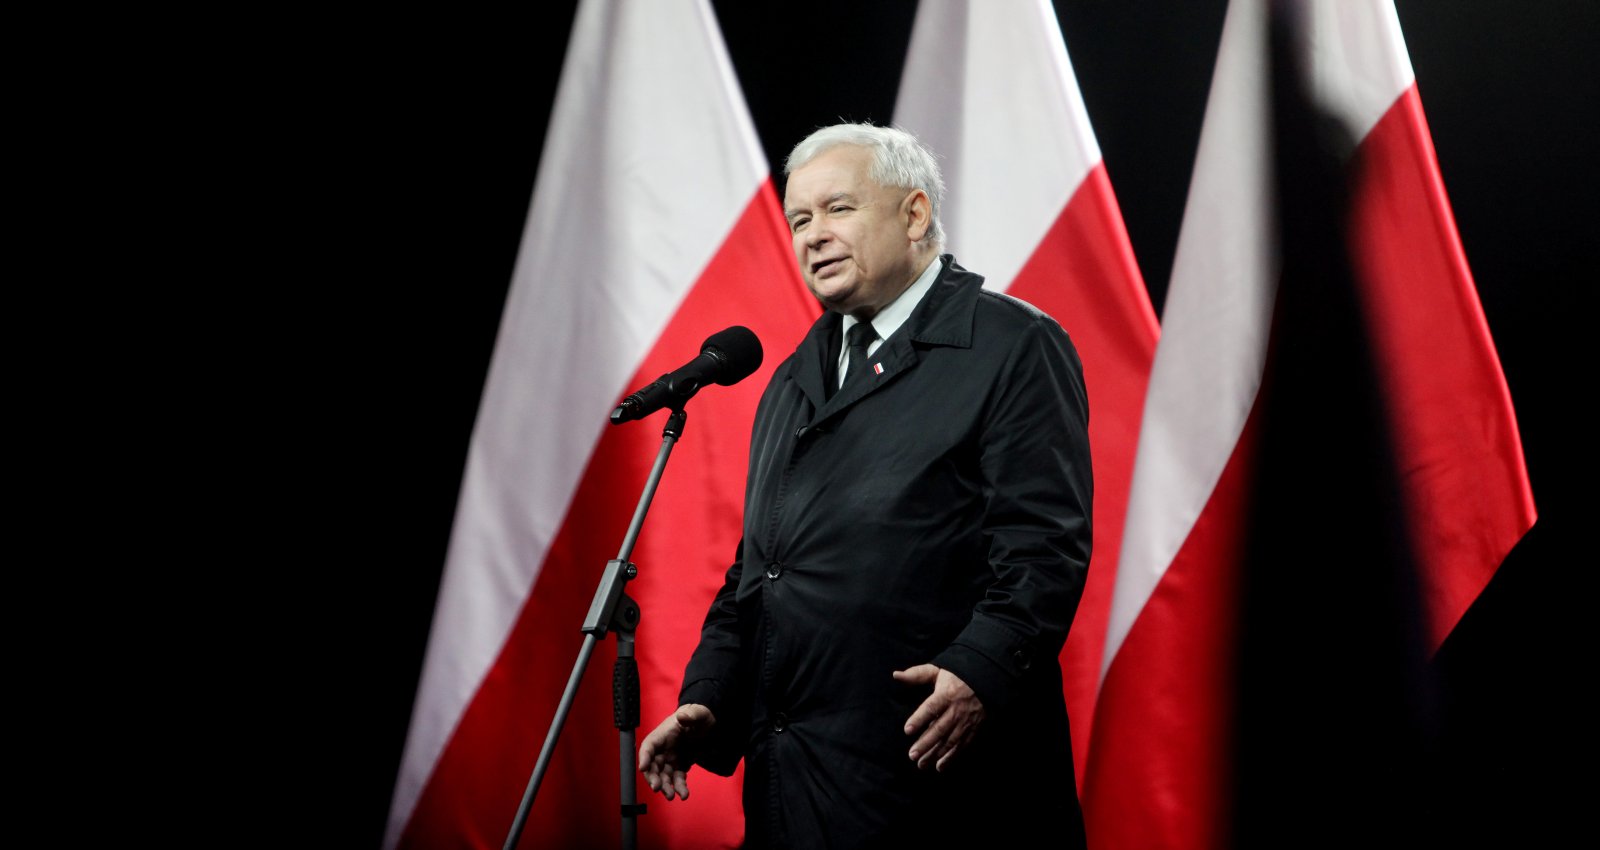 W niedzielę nie głosuję na Trzaskowskiego. Głosuję, by Jarosław Kaczyński nie był już dłużej prezydentem